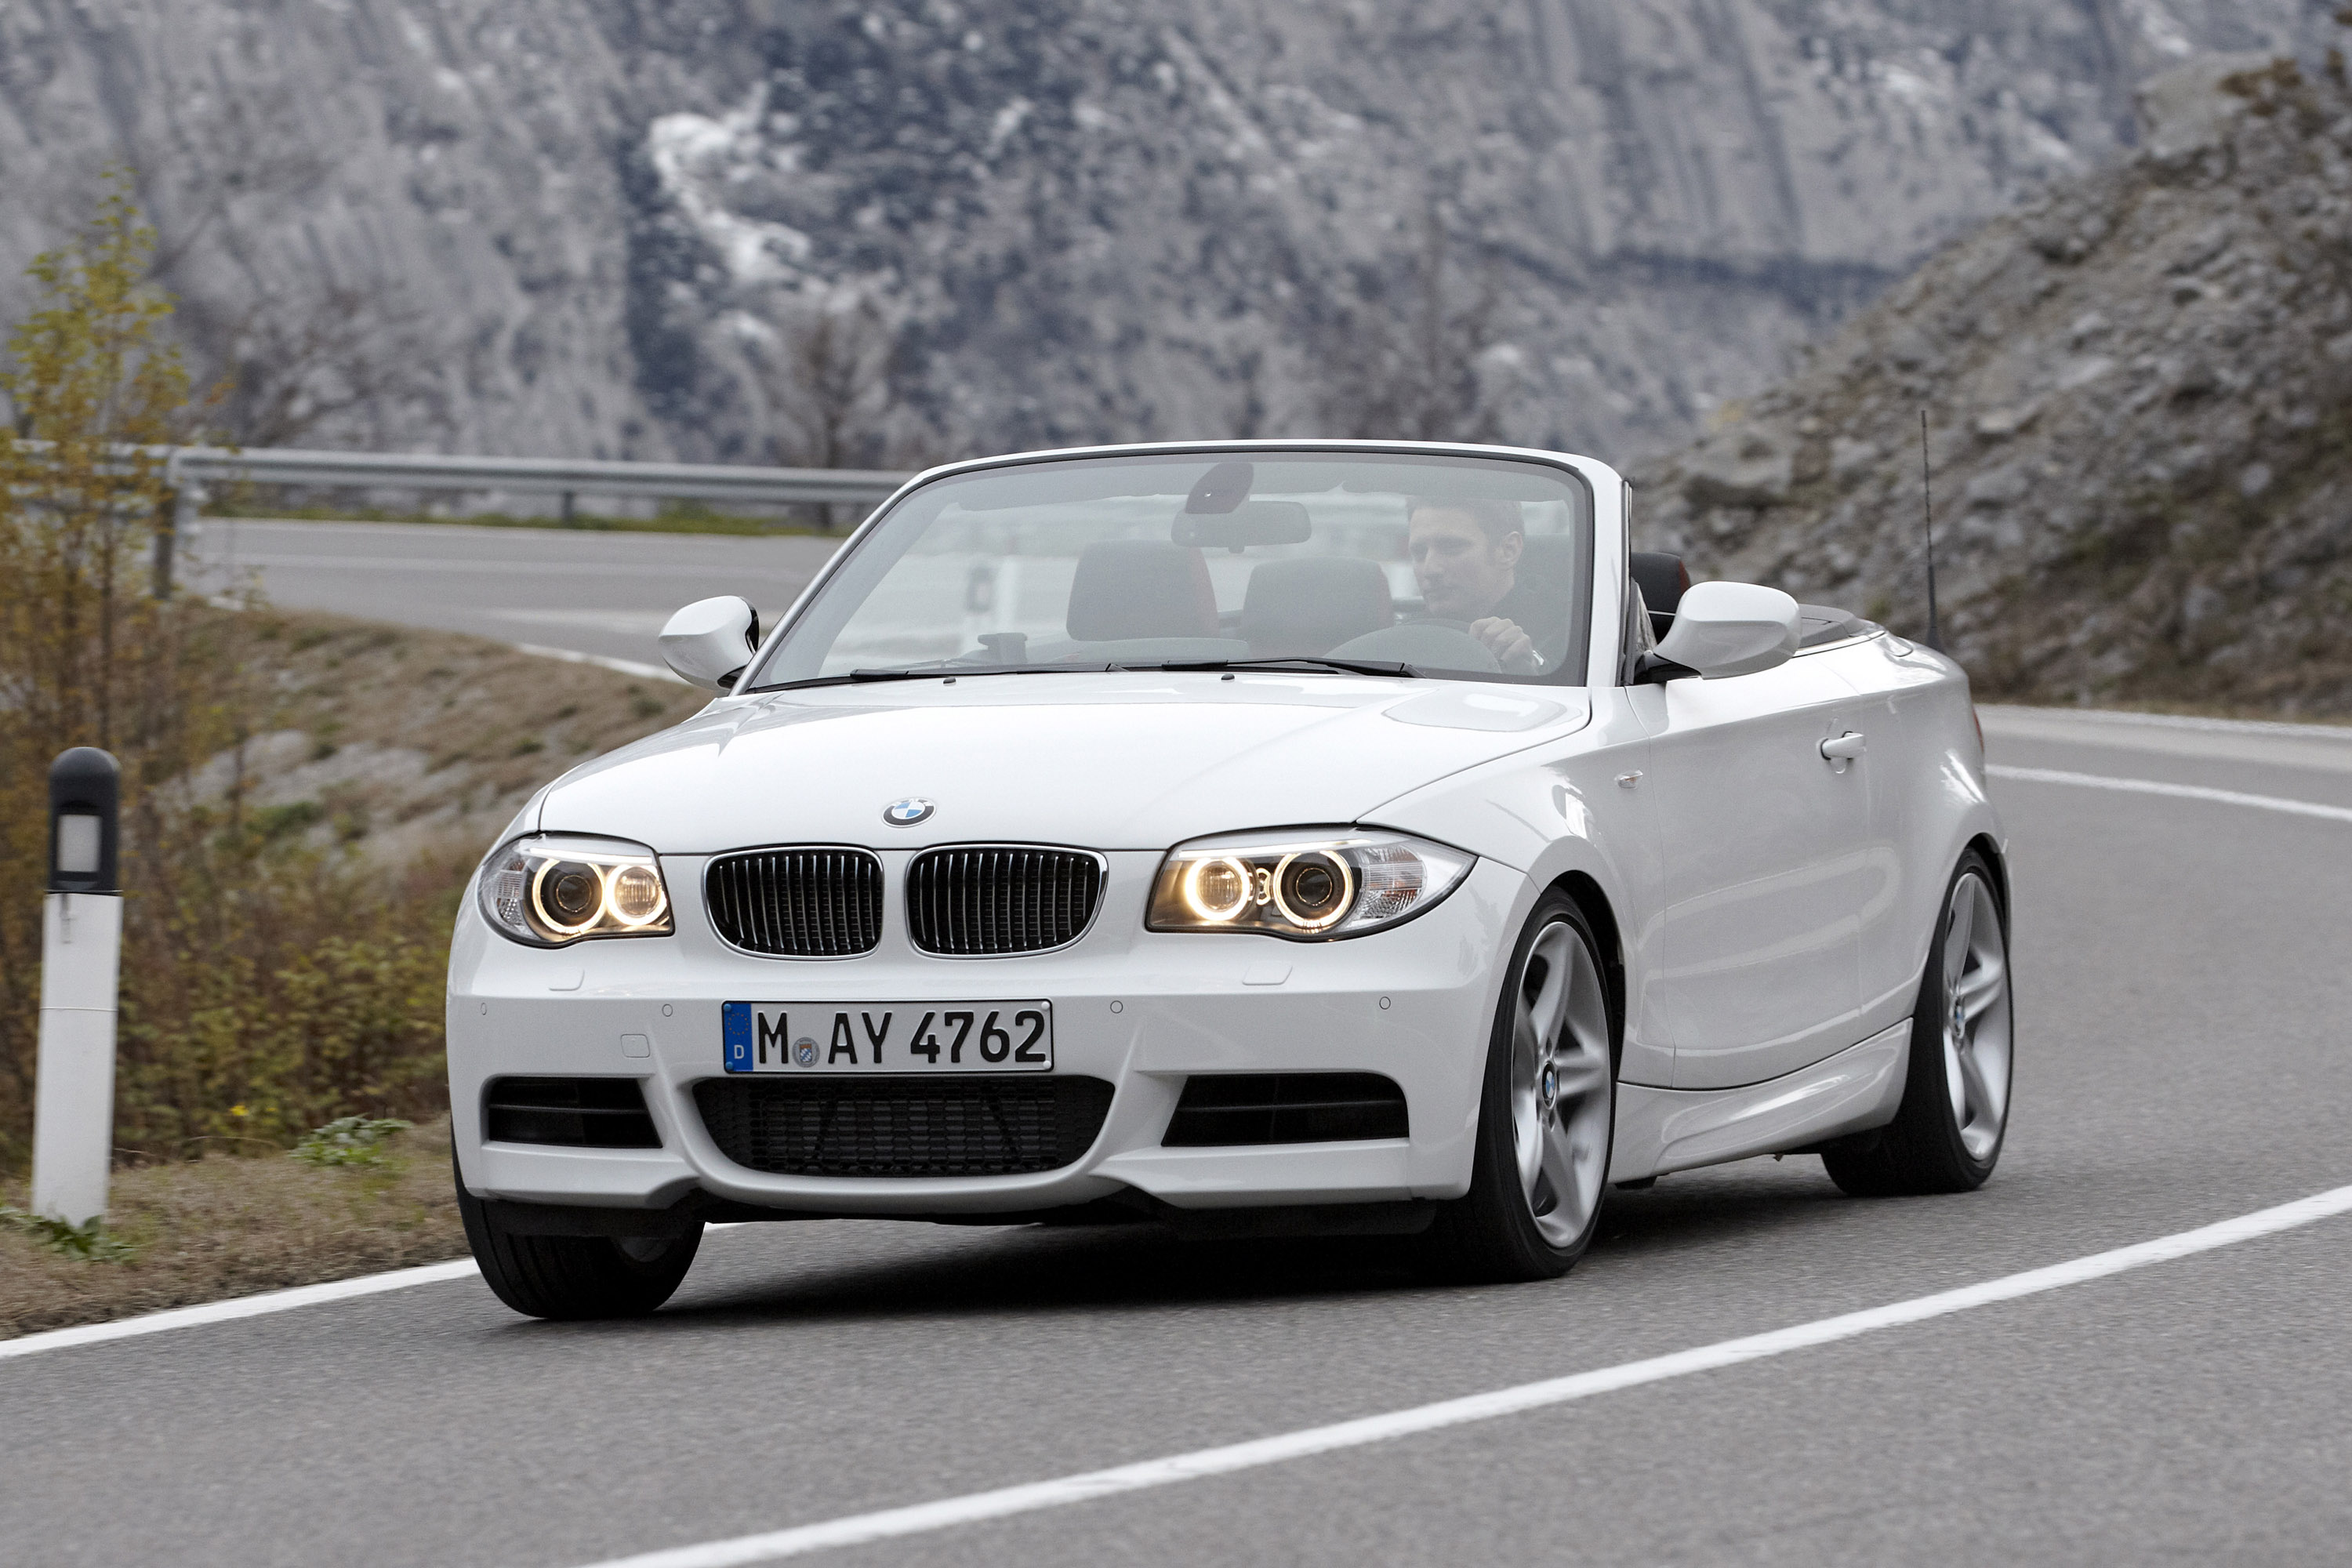 intern Waarschuwing Uitdrukkelijk BMW 1 Series Convertible (2011) - HD Picture 8 of 22 - #46649 - 3000x2000